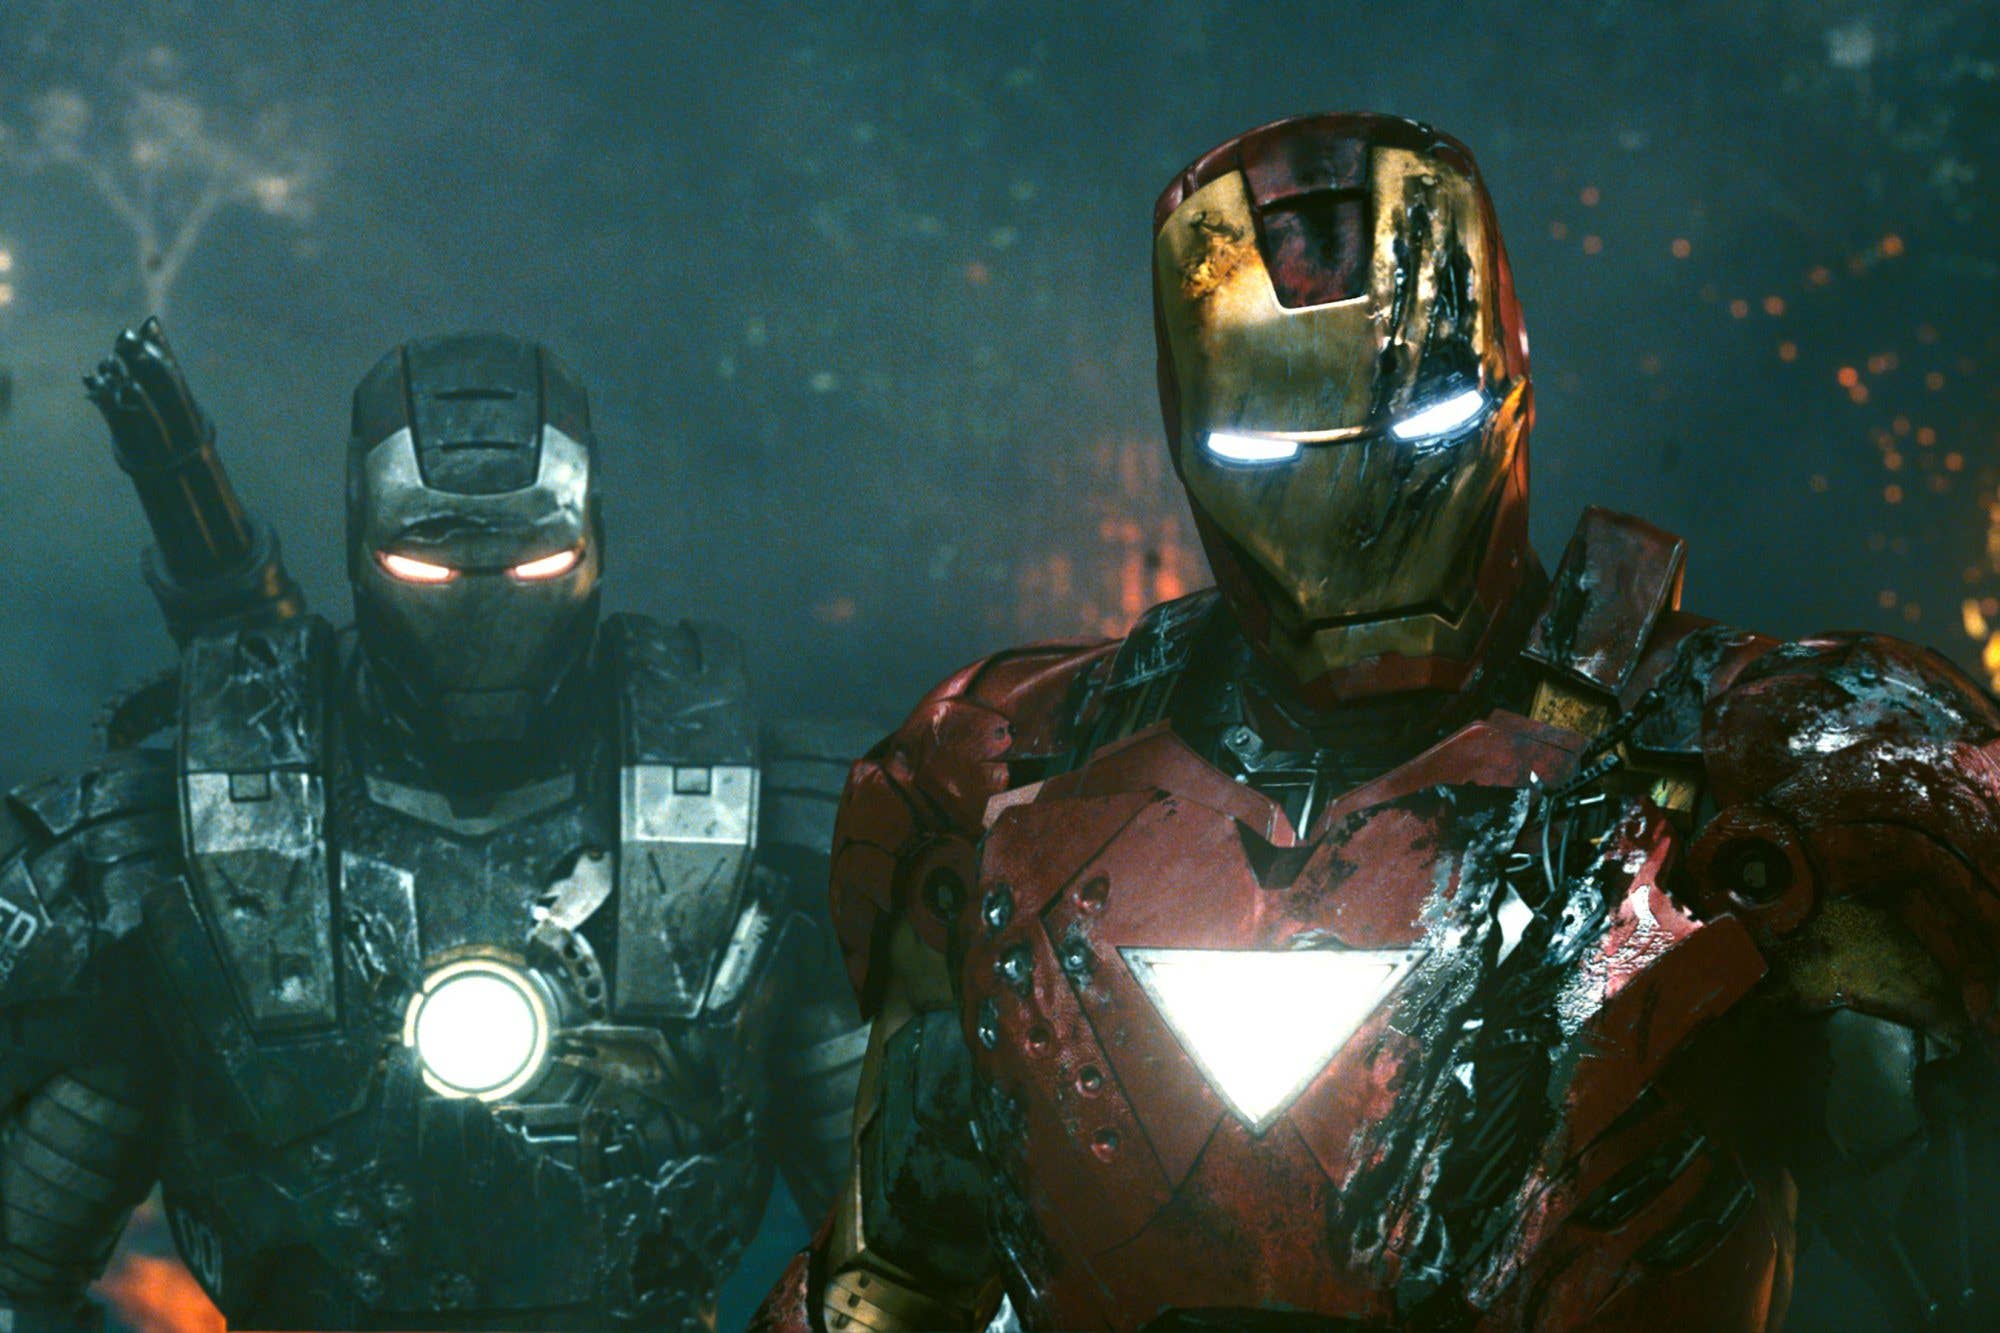 Marvel's Iron Man Meets Metal - Erock